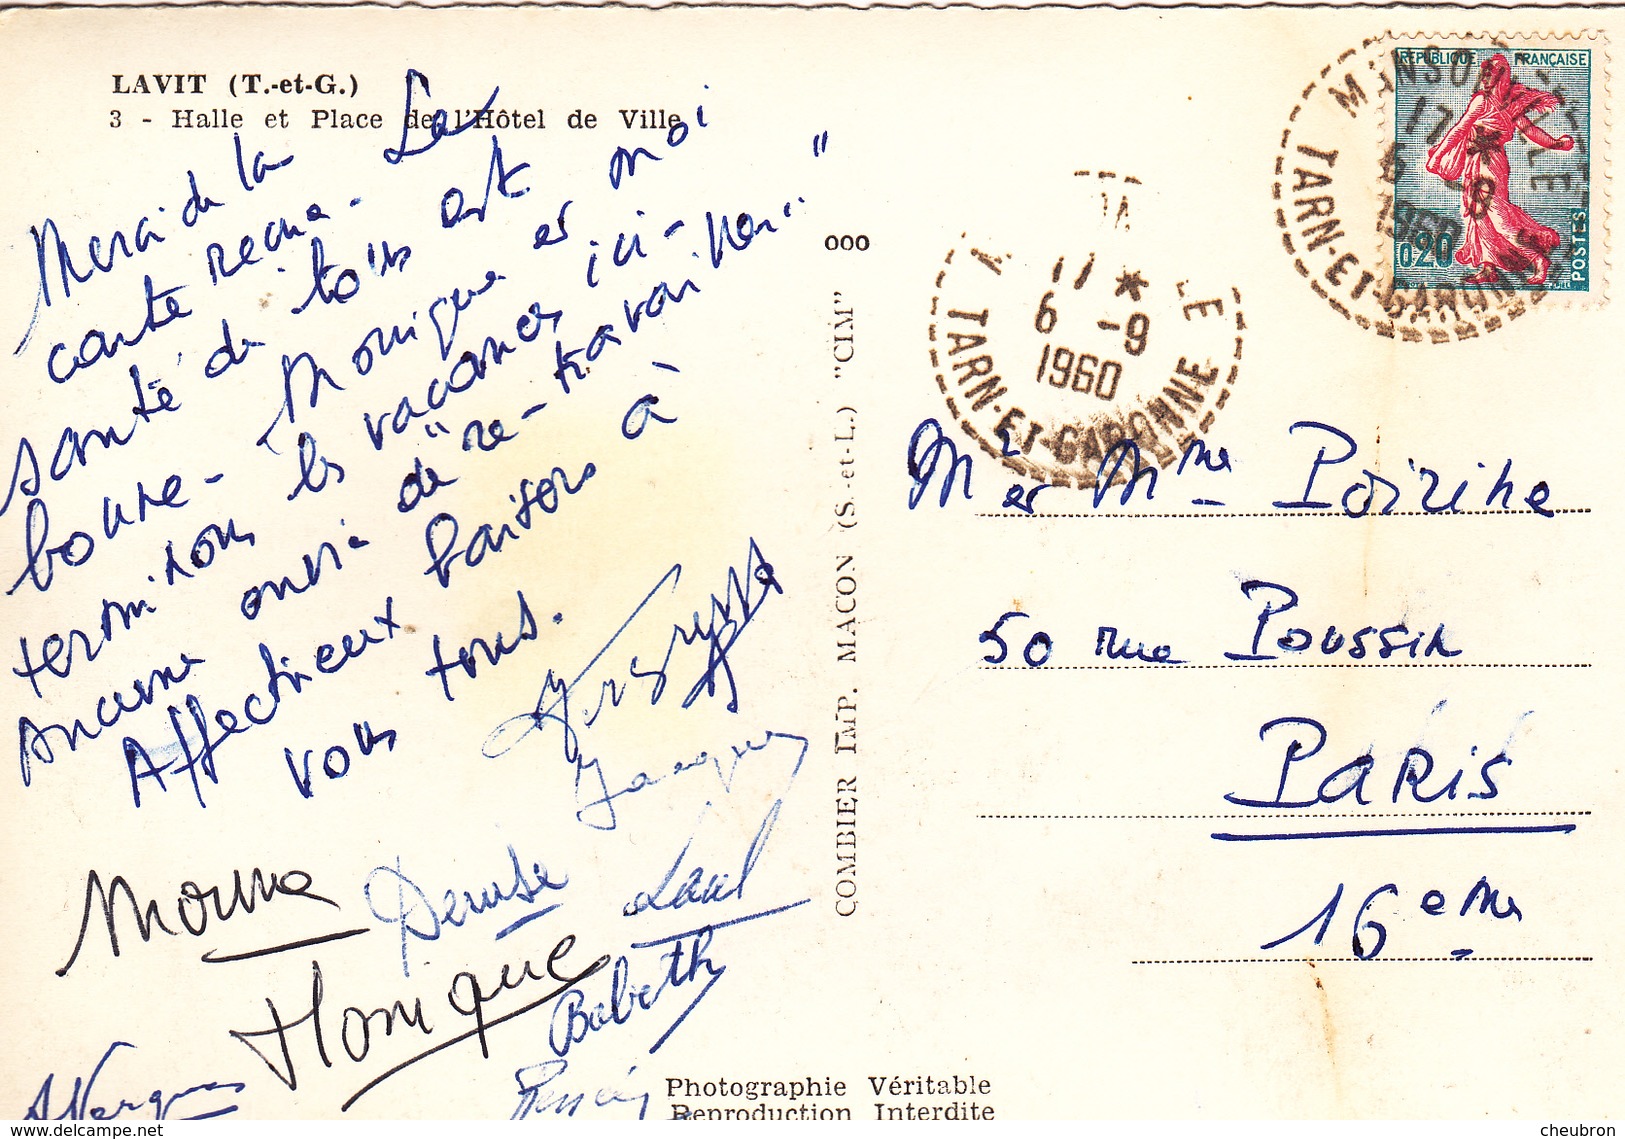 82. LAVIT. RARE. HALLE ET PLACE DE L'HOTEL DE VILLE. ANNÉE 1960 - Lavit